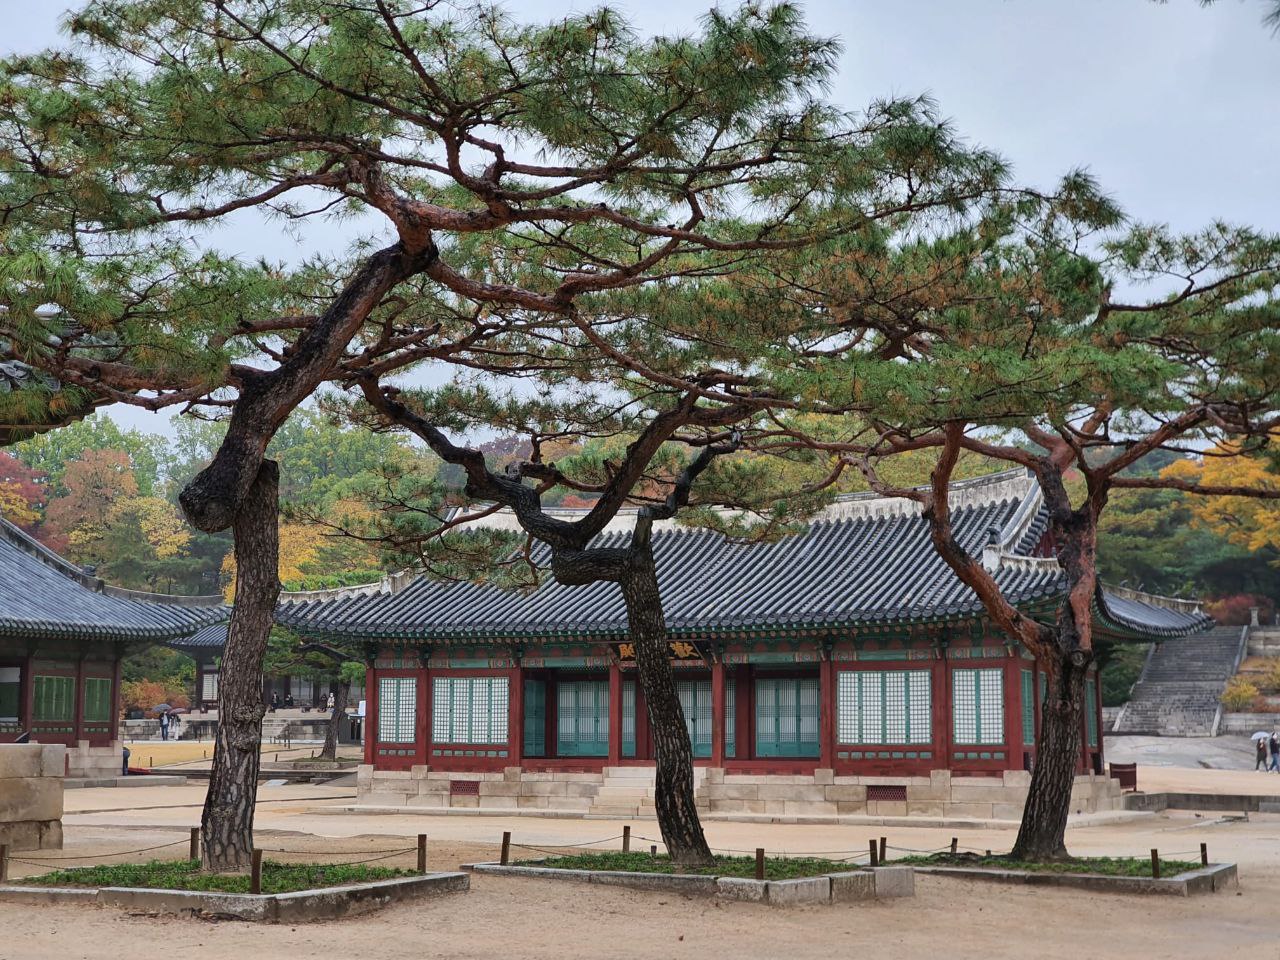 В Южной Корее сохранилось немало исторических зданий, позволяющих наглядно познакомиться с культурой этой страны